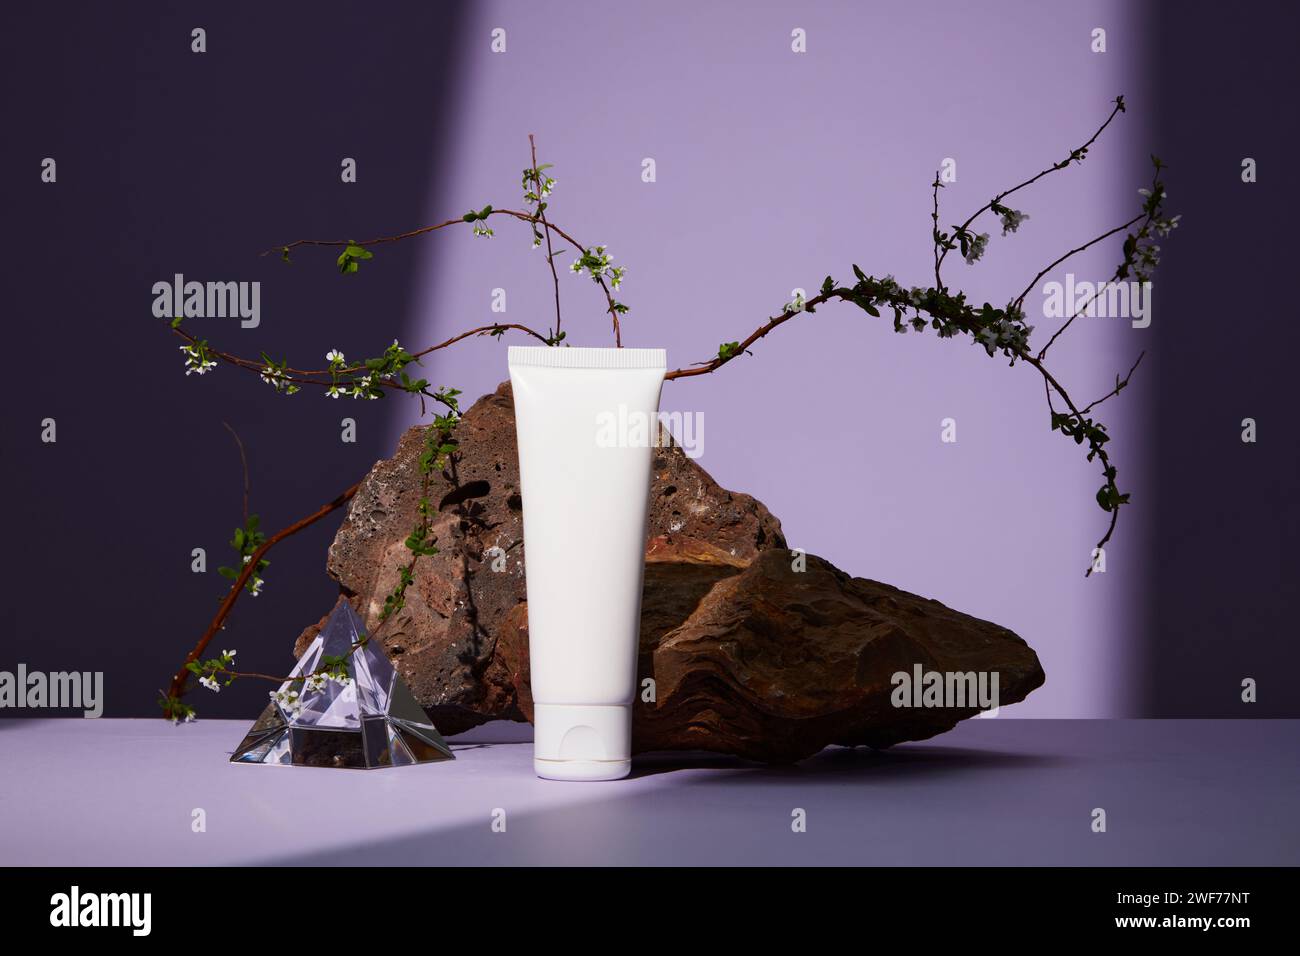 Vorderansicht des weißen Kunststoffröhrchens mit Gesichtscreme oder Gesichtsreiniger auf violettem Hintergrund. Brauner Stein mit weißer Blume als Highlight. Stockfoto